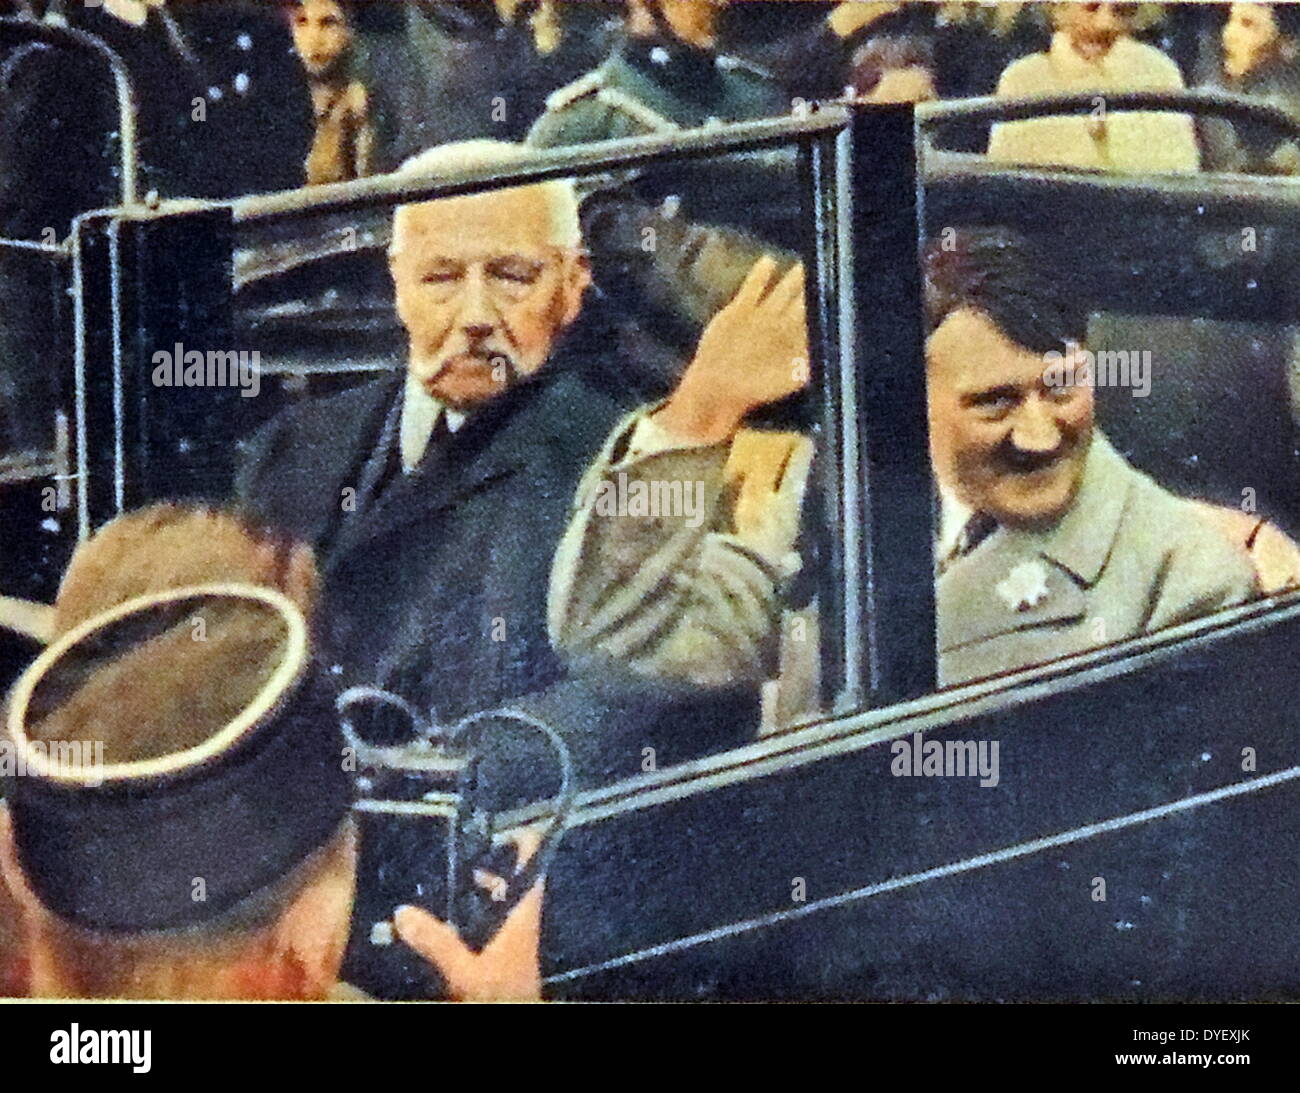 Präsident Paul Von Hindenburg und Adolf Hitler in einem Auto fahren, nachdem Hitler 1933 Reichskanzler ernannt wurde Stockfoto